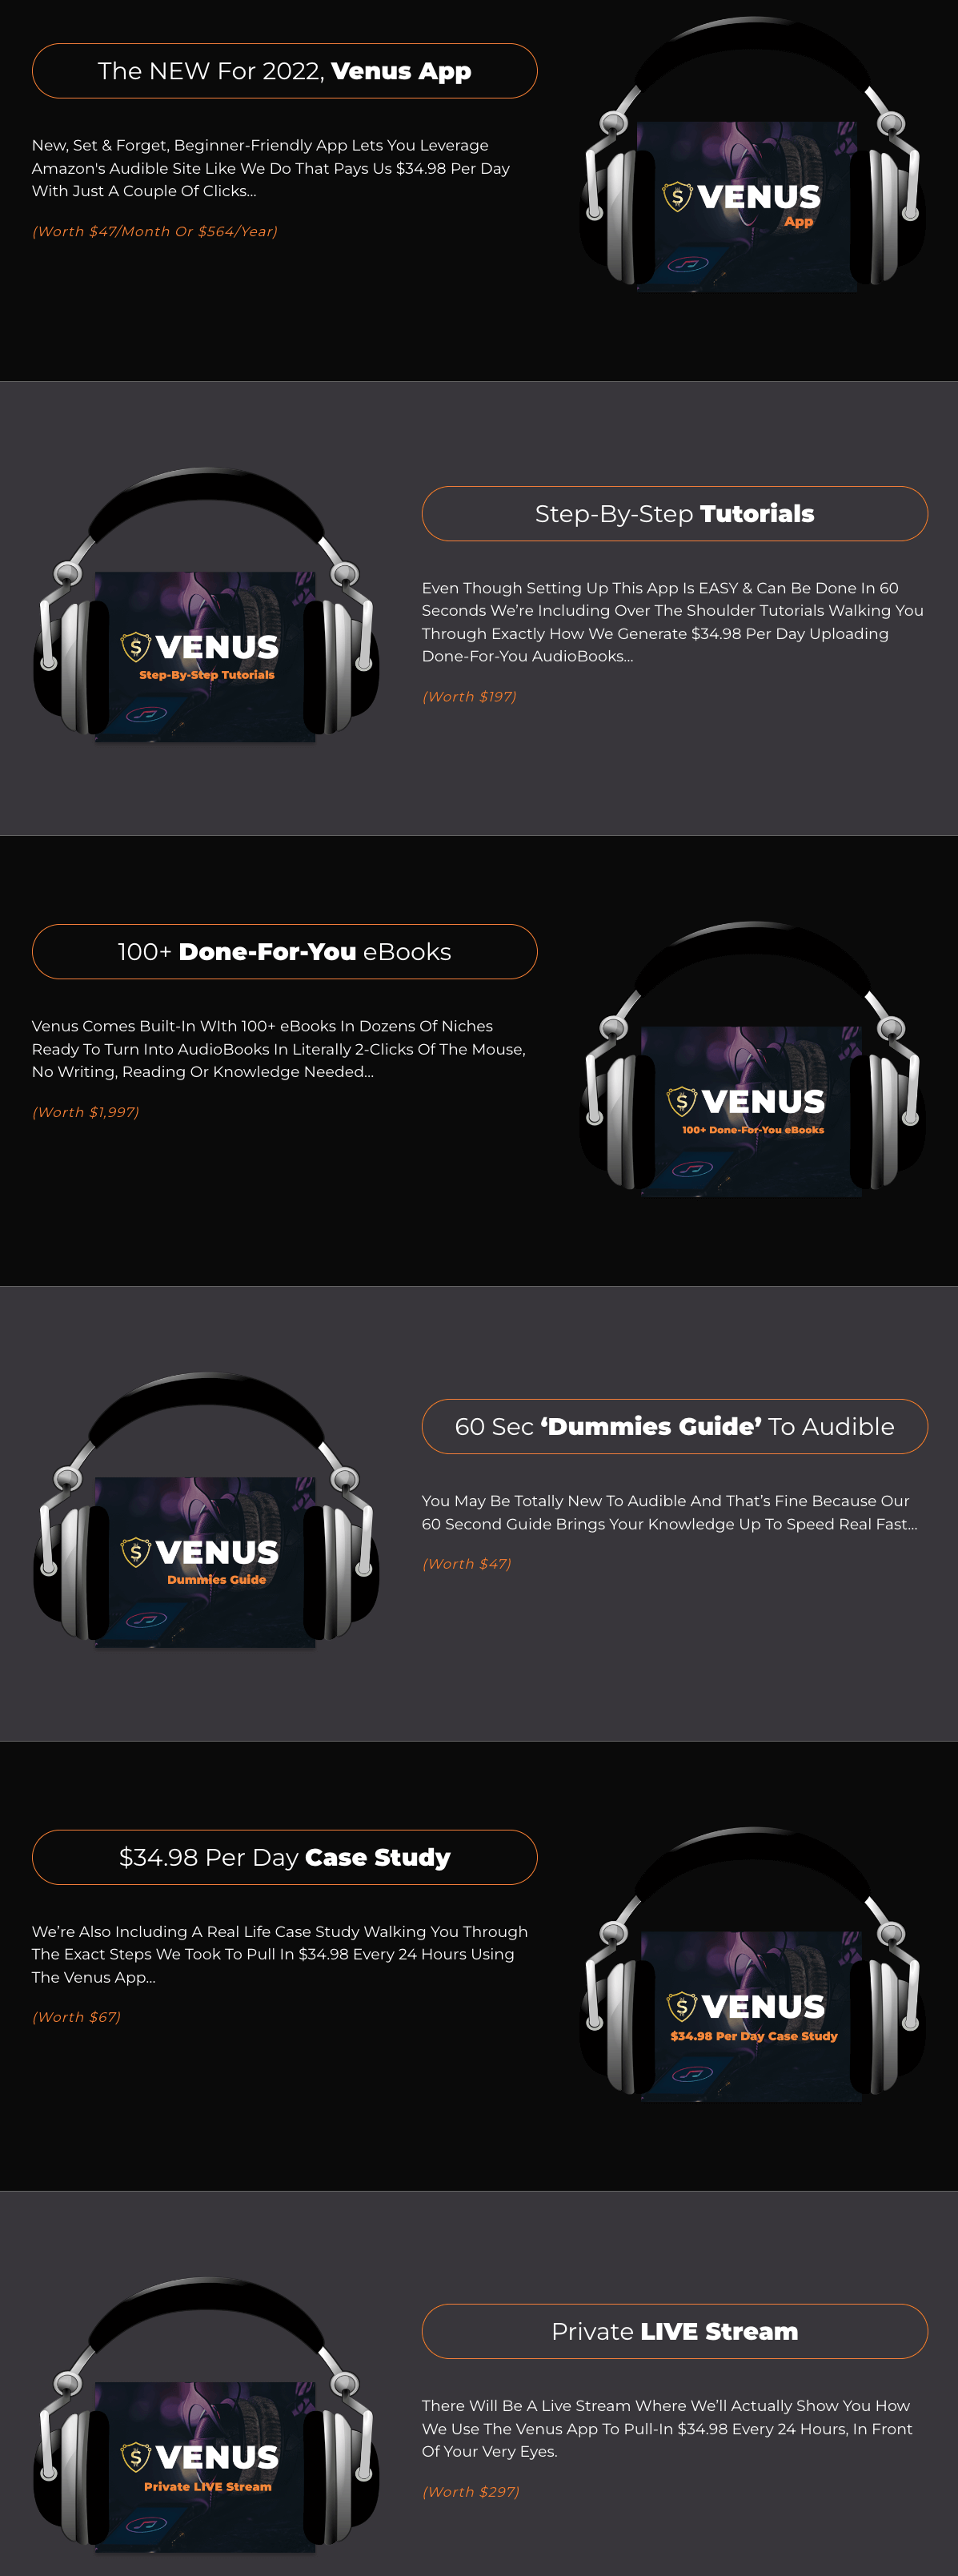 VENUS-App-Feature